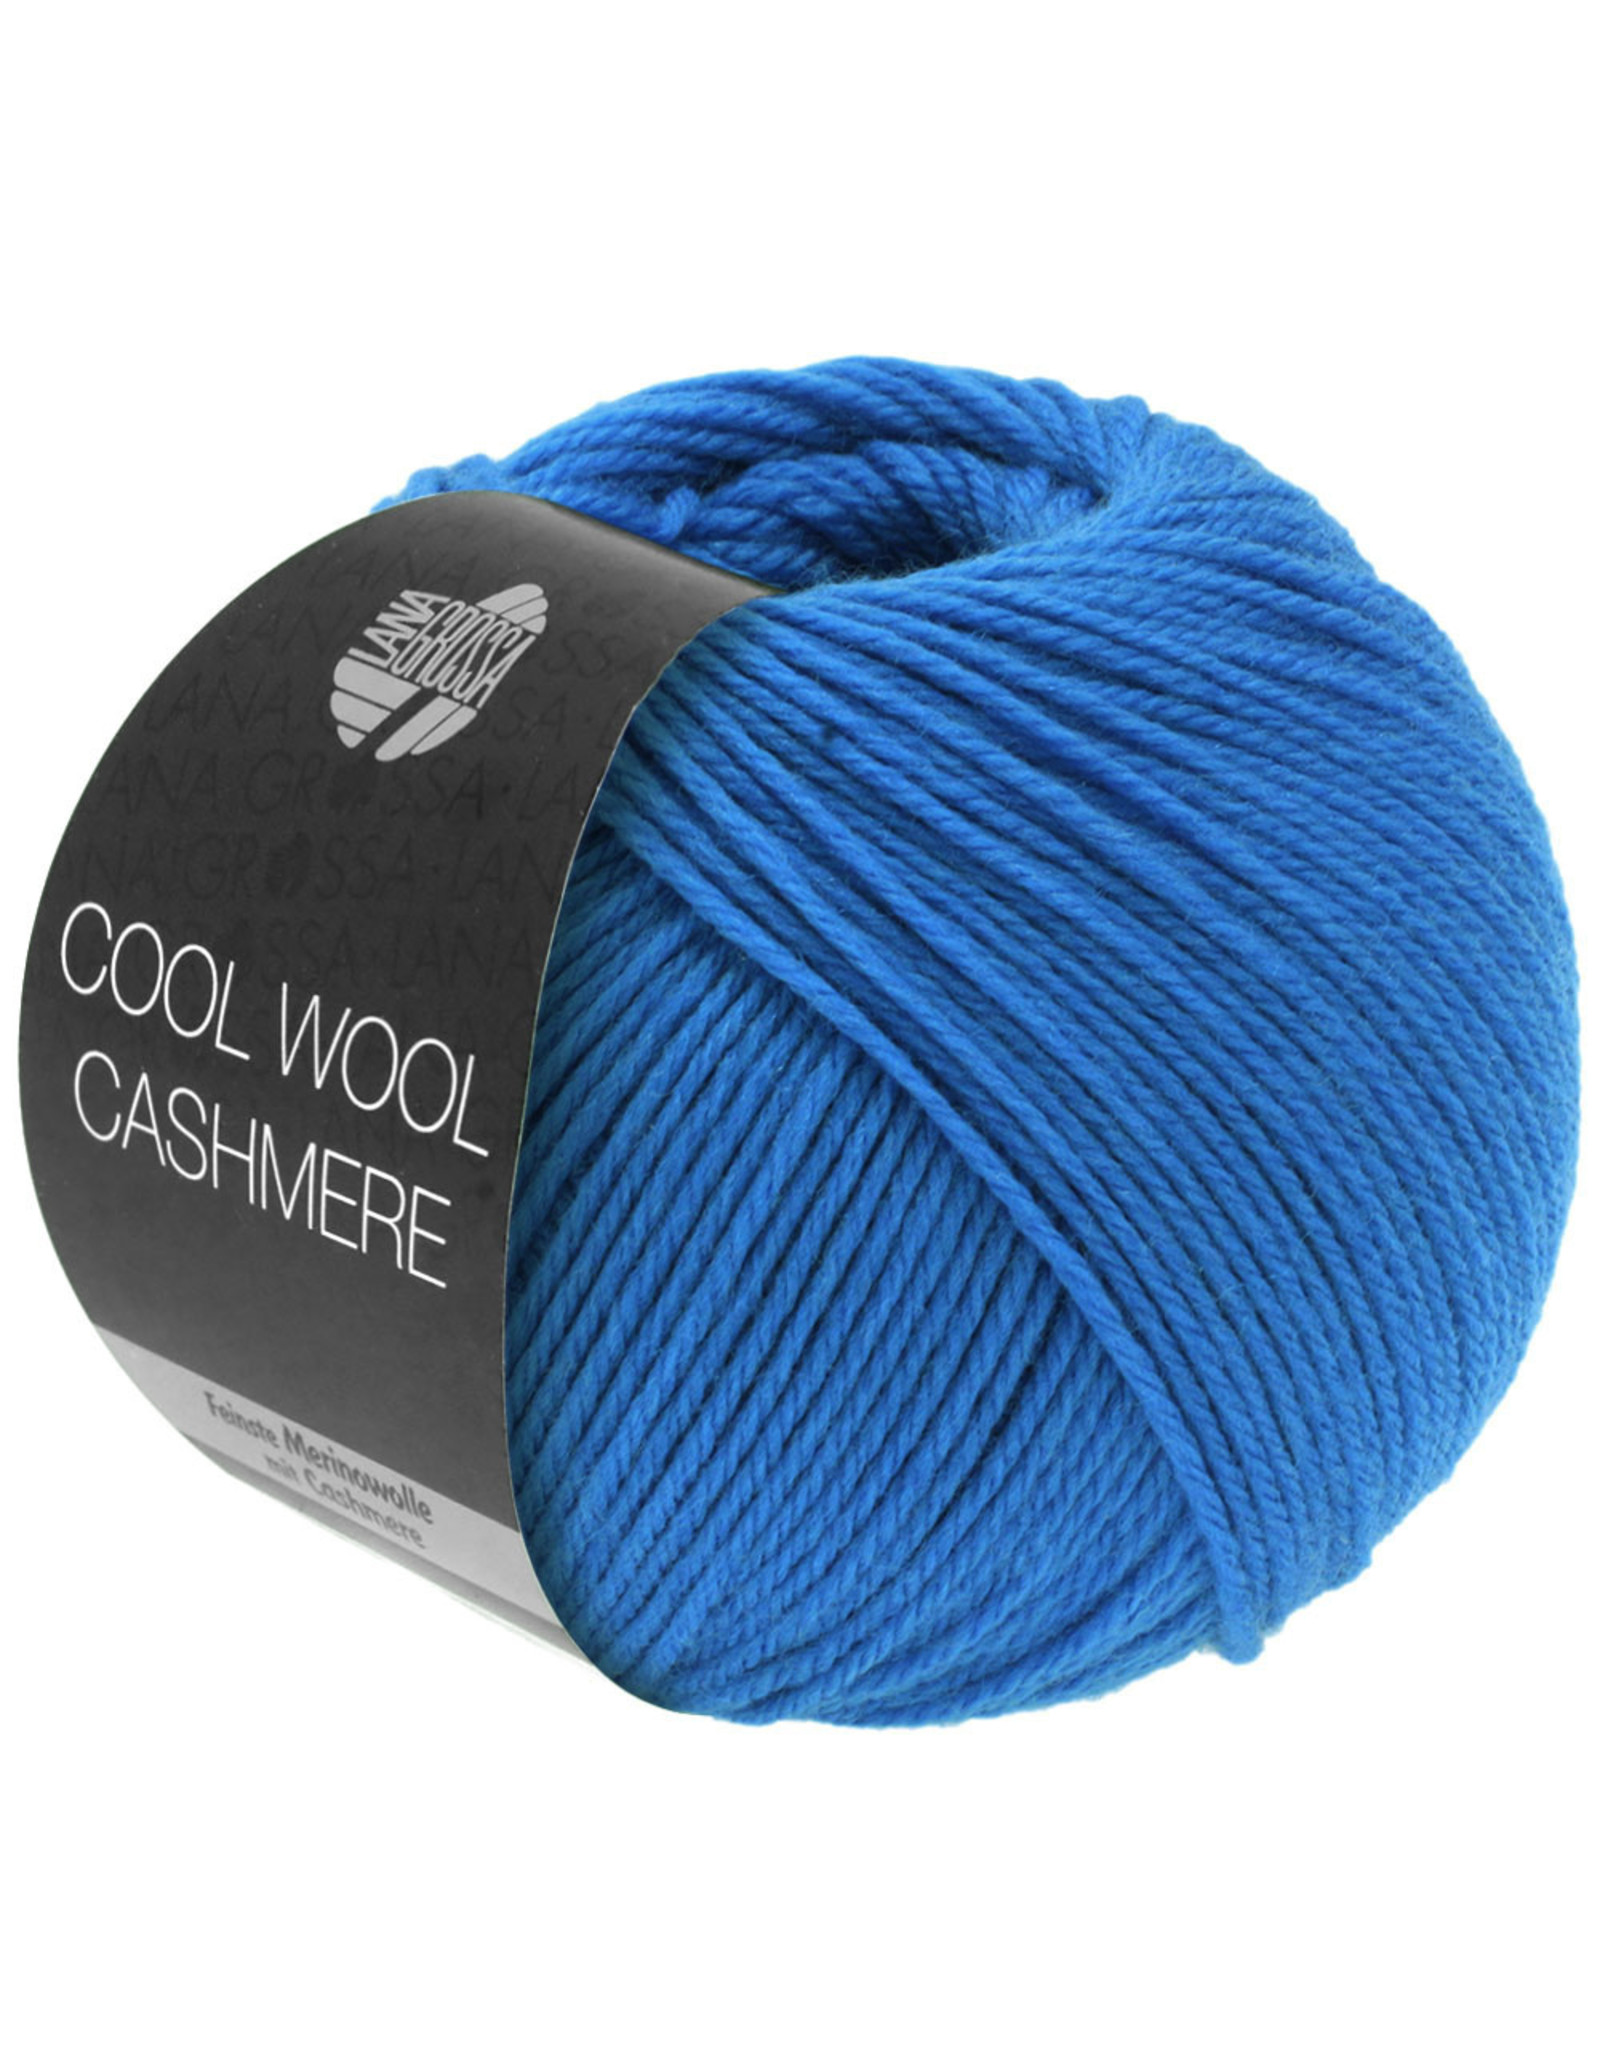 Lana Grossa Lana Grossa Cool wool Cashmere 036